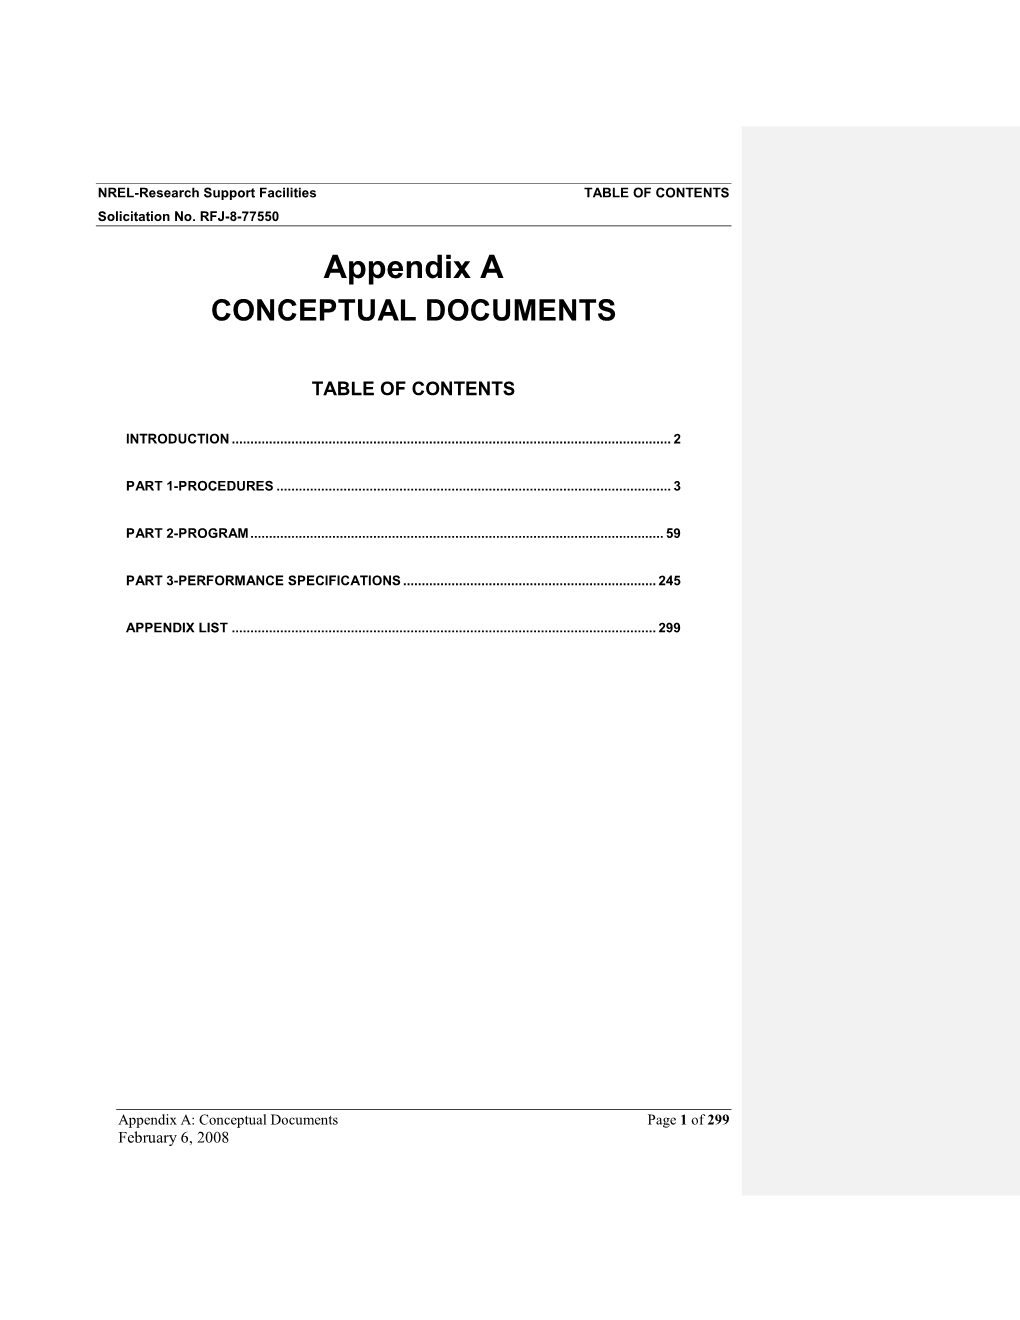 NREL Request for Proposals: Appendix a Conceptual Documents